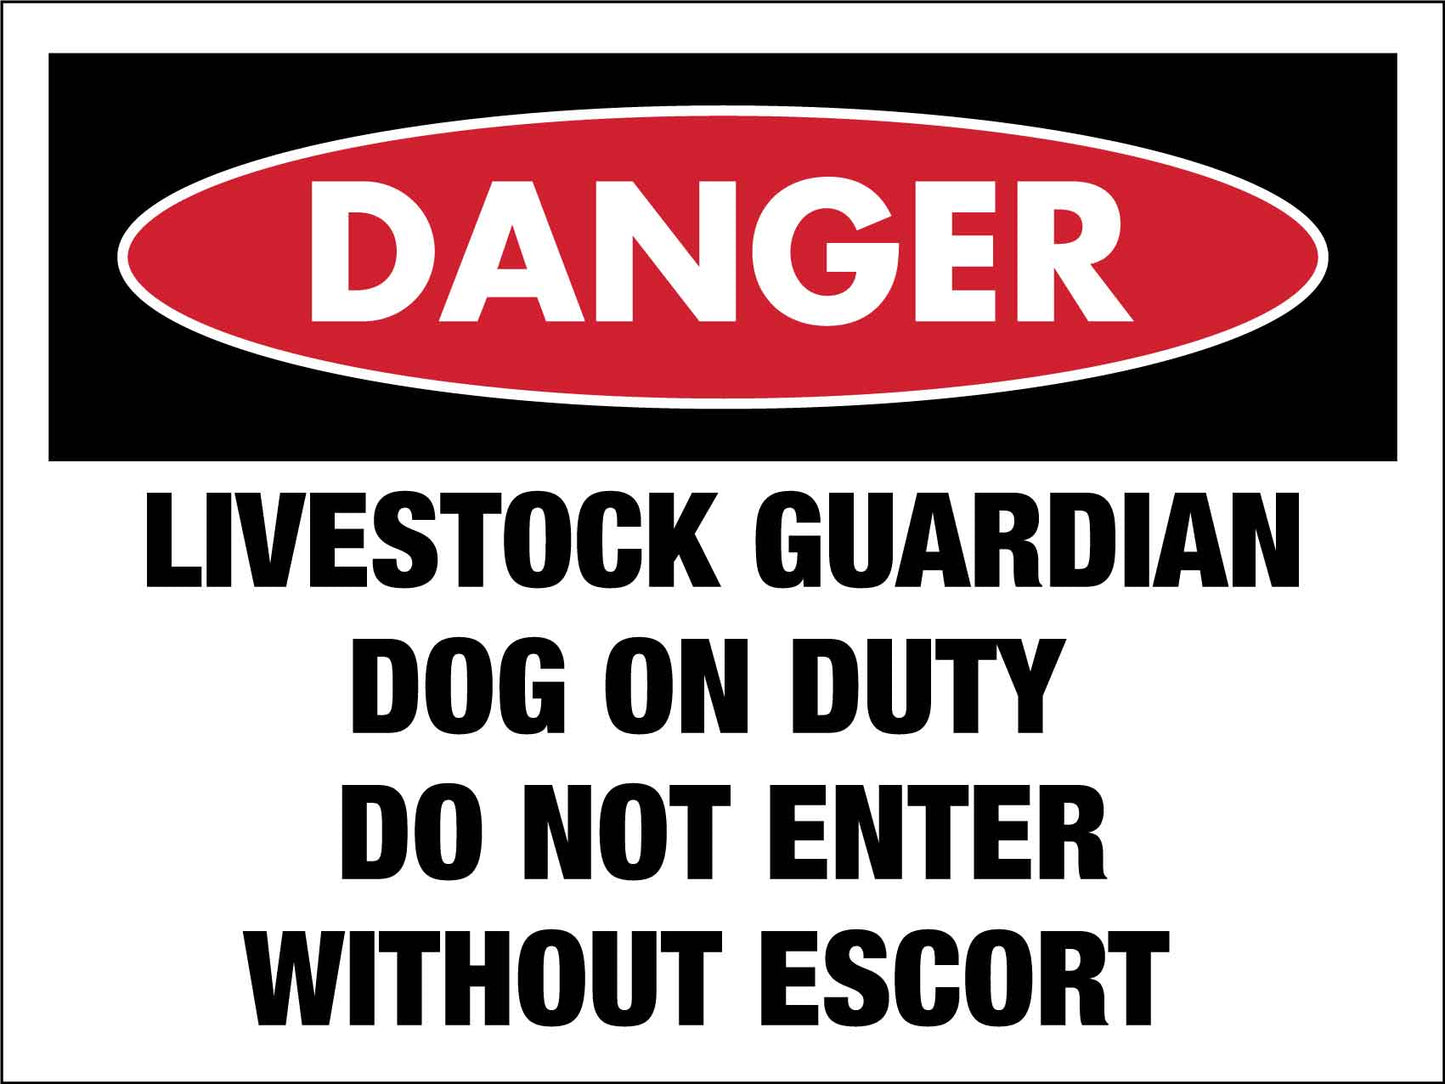 Danger Guardian Livestock Dog on Duty Sign